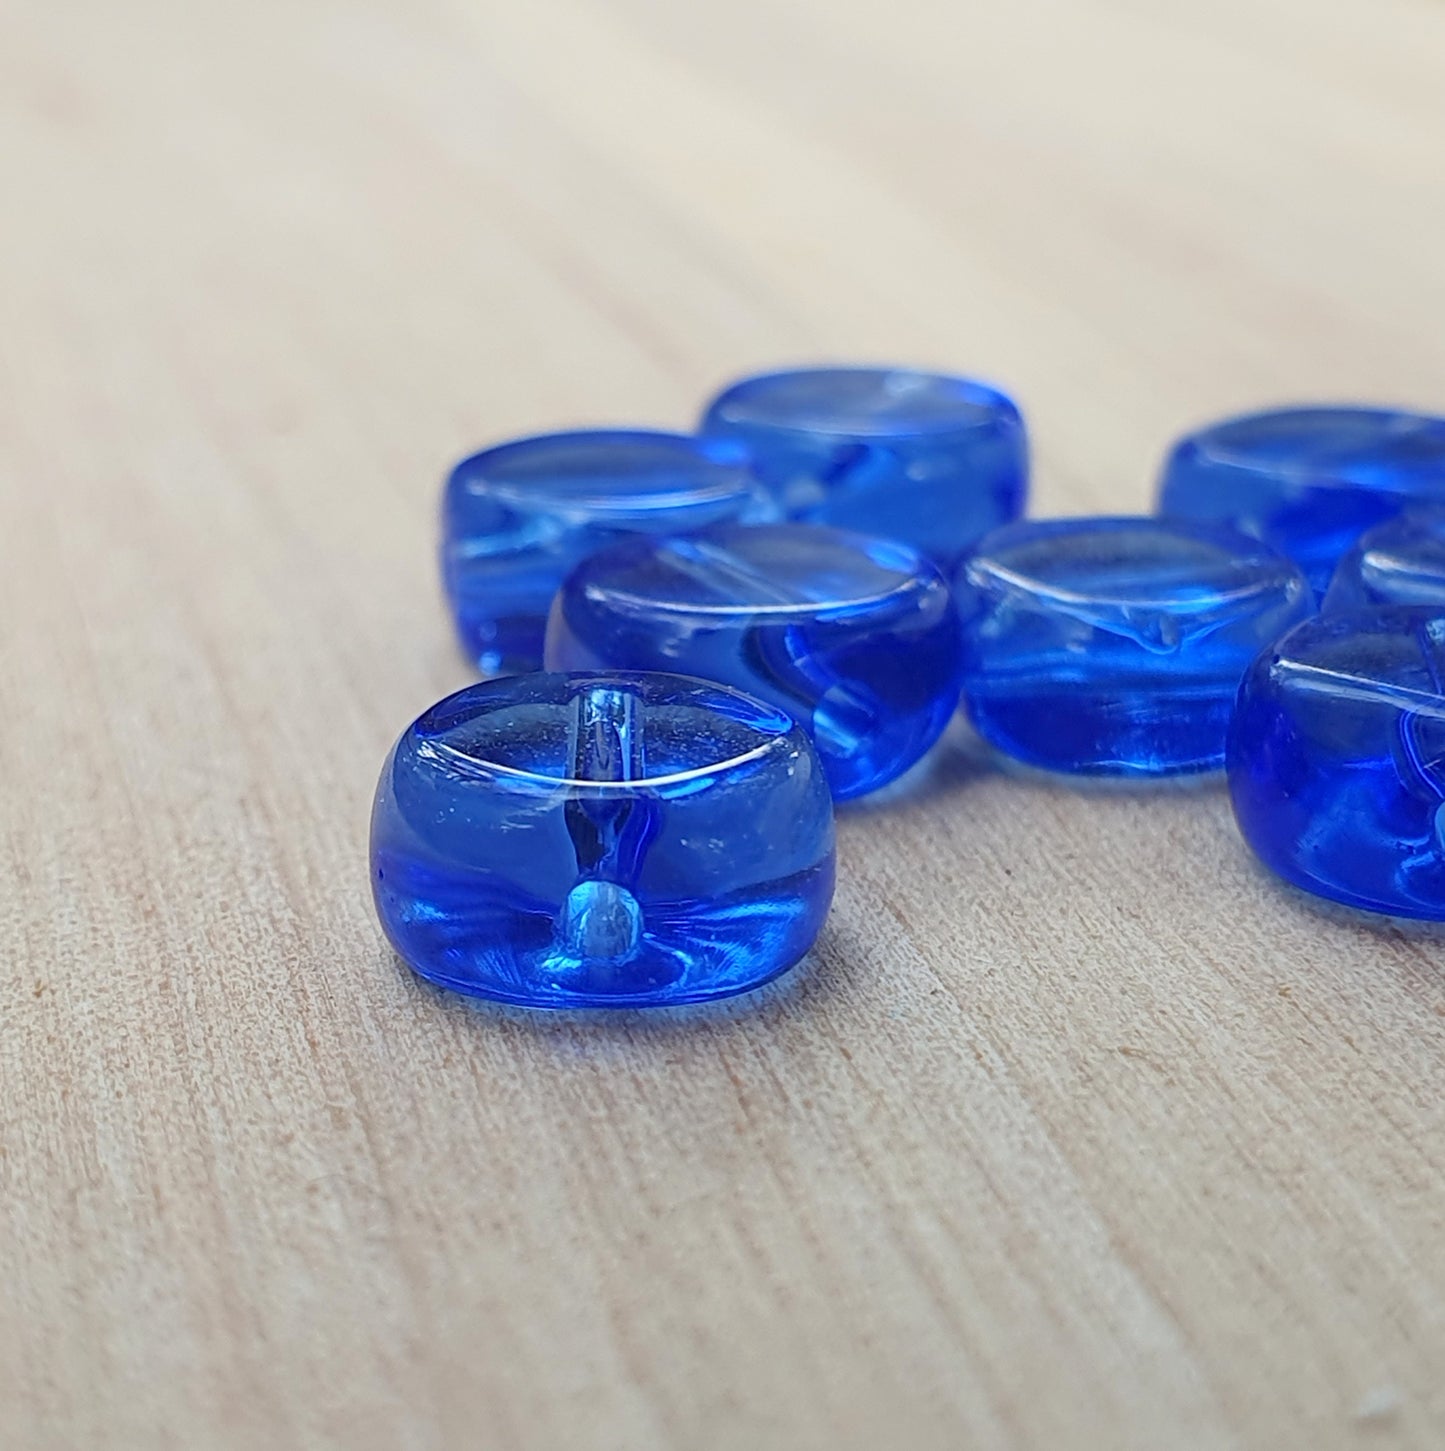 10 runde Glasperlen, Münze, transparent, 8mm Durchmesser, blau